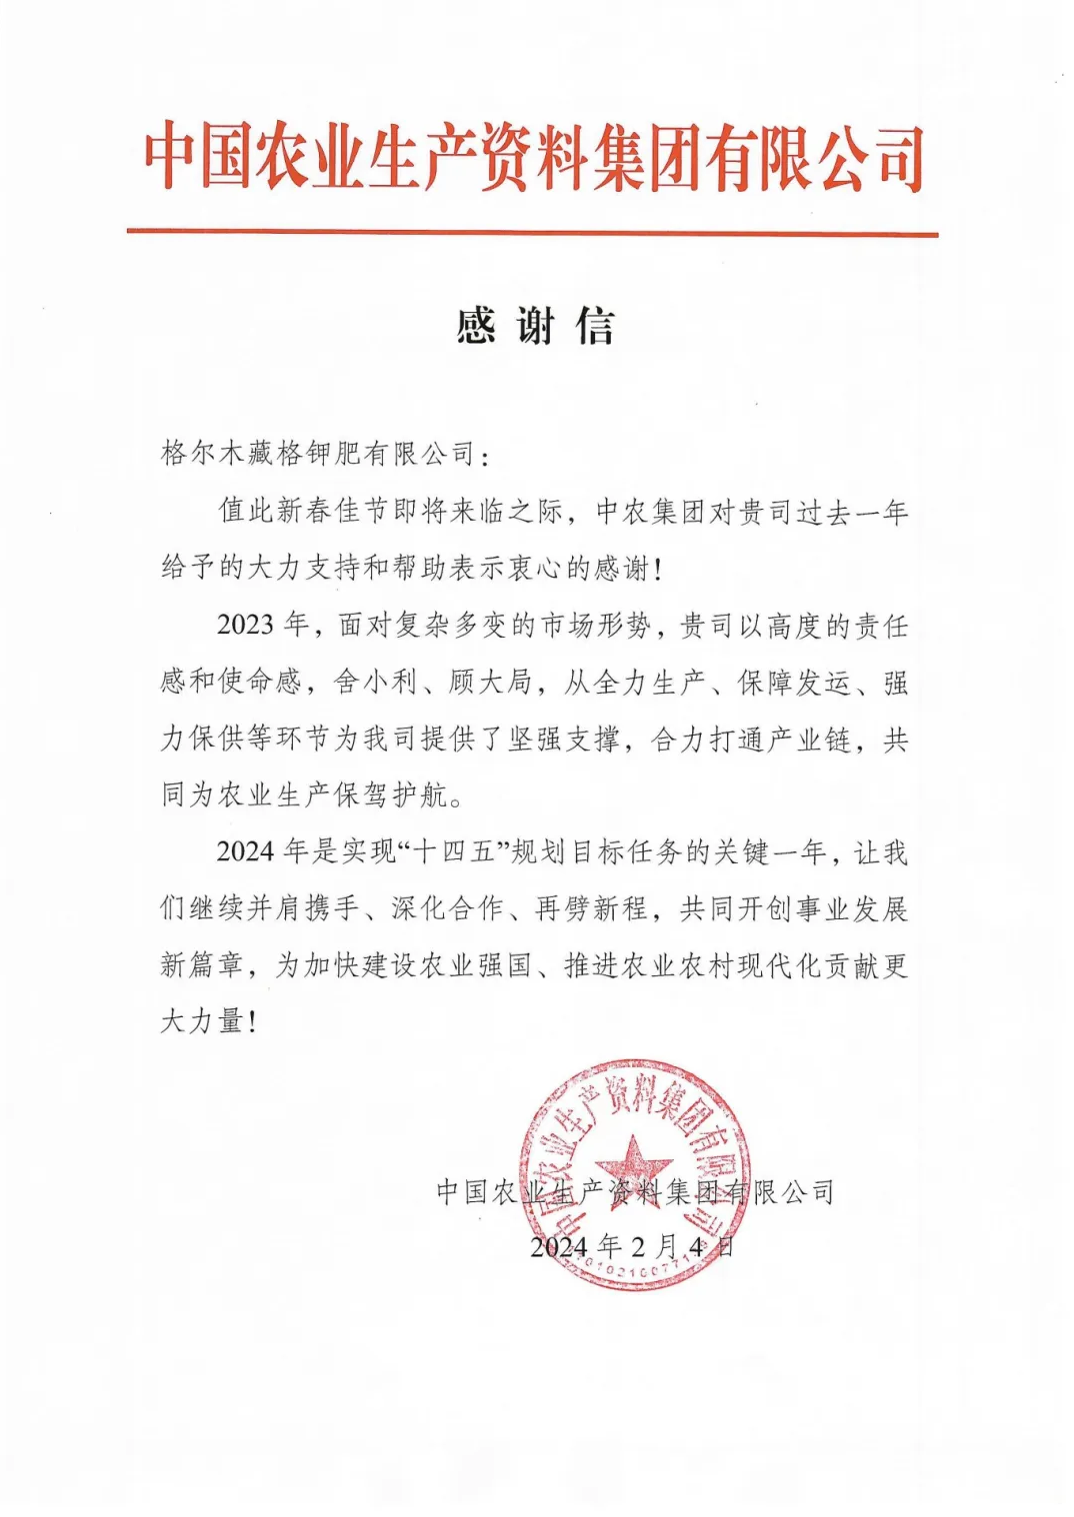 藏格钾肥收到中国农业生产资料有限公司感谢信